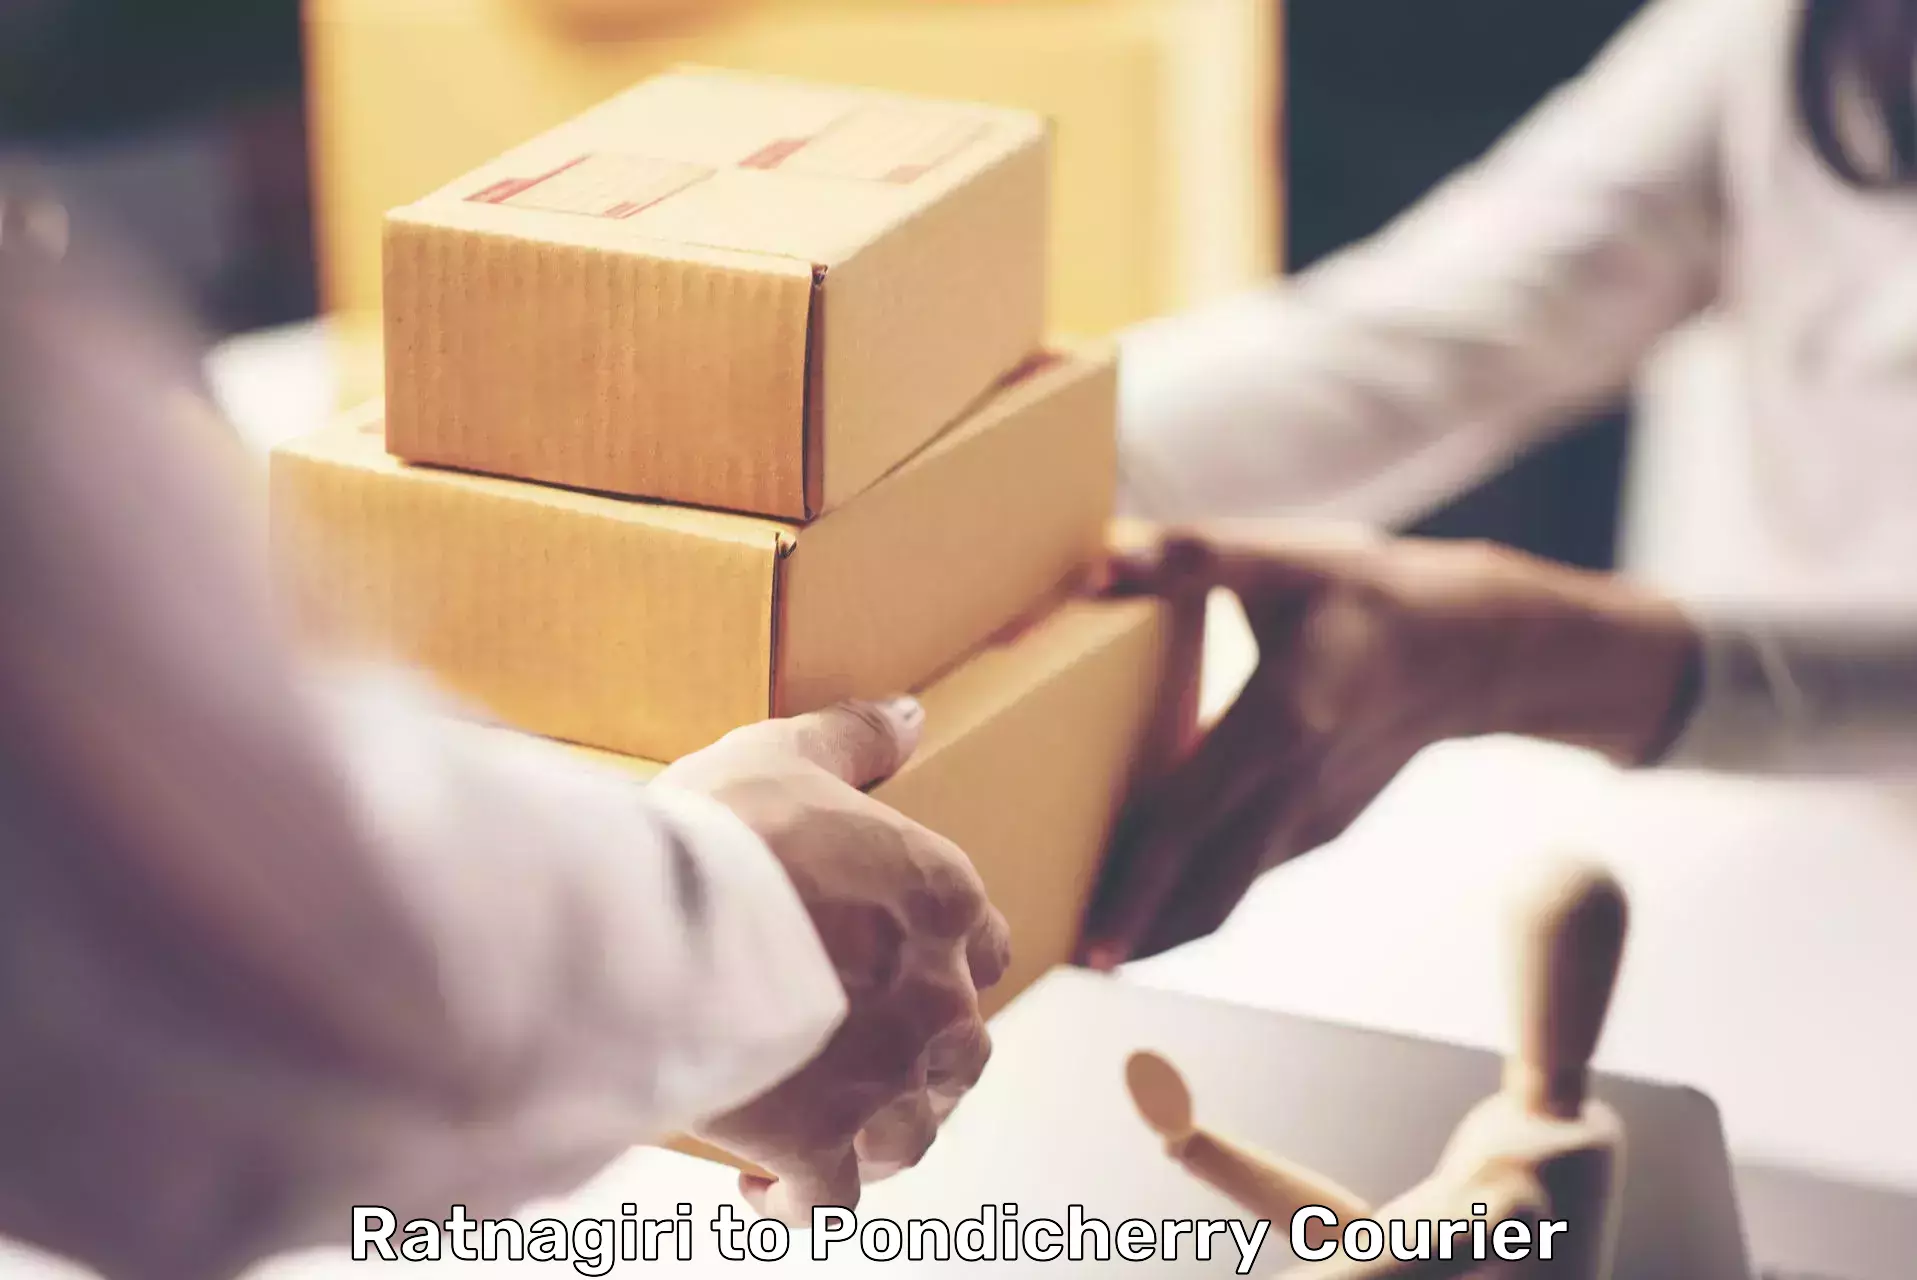 Customer-oriented courier services Ratnagiri to Pondicherry